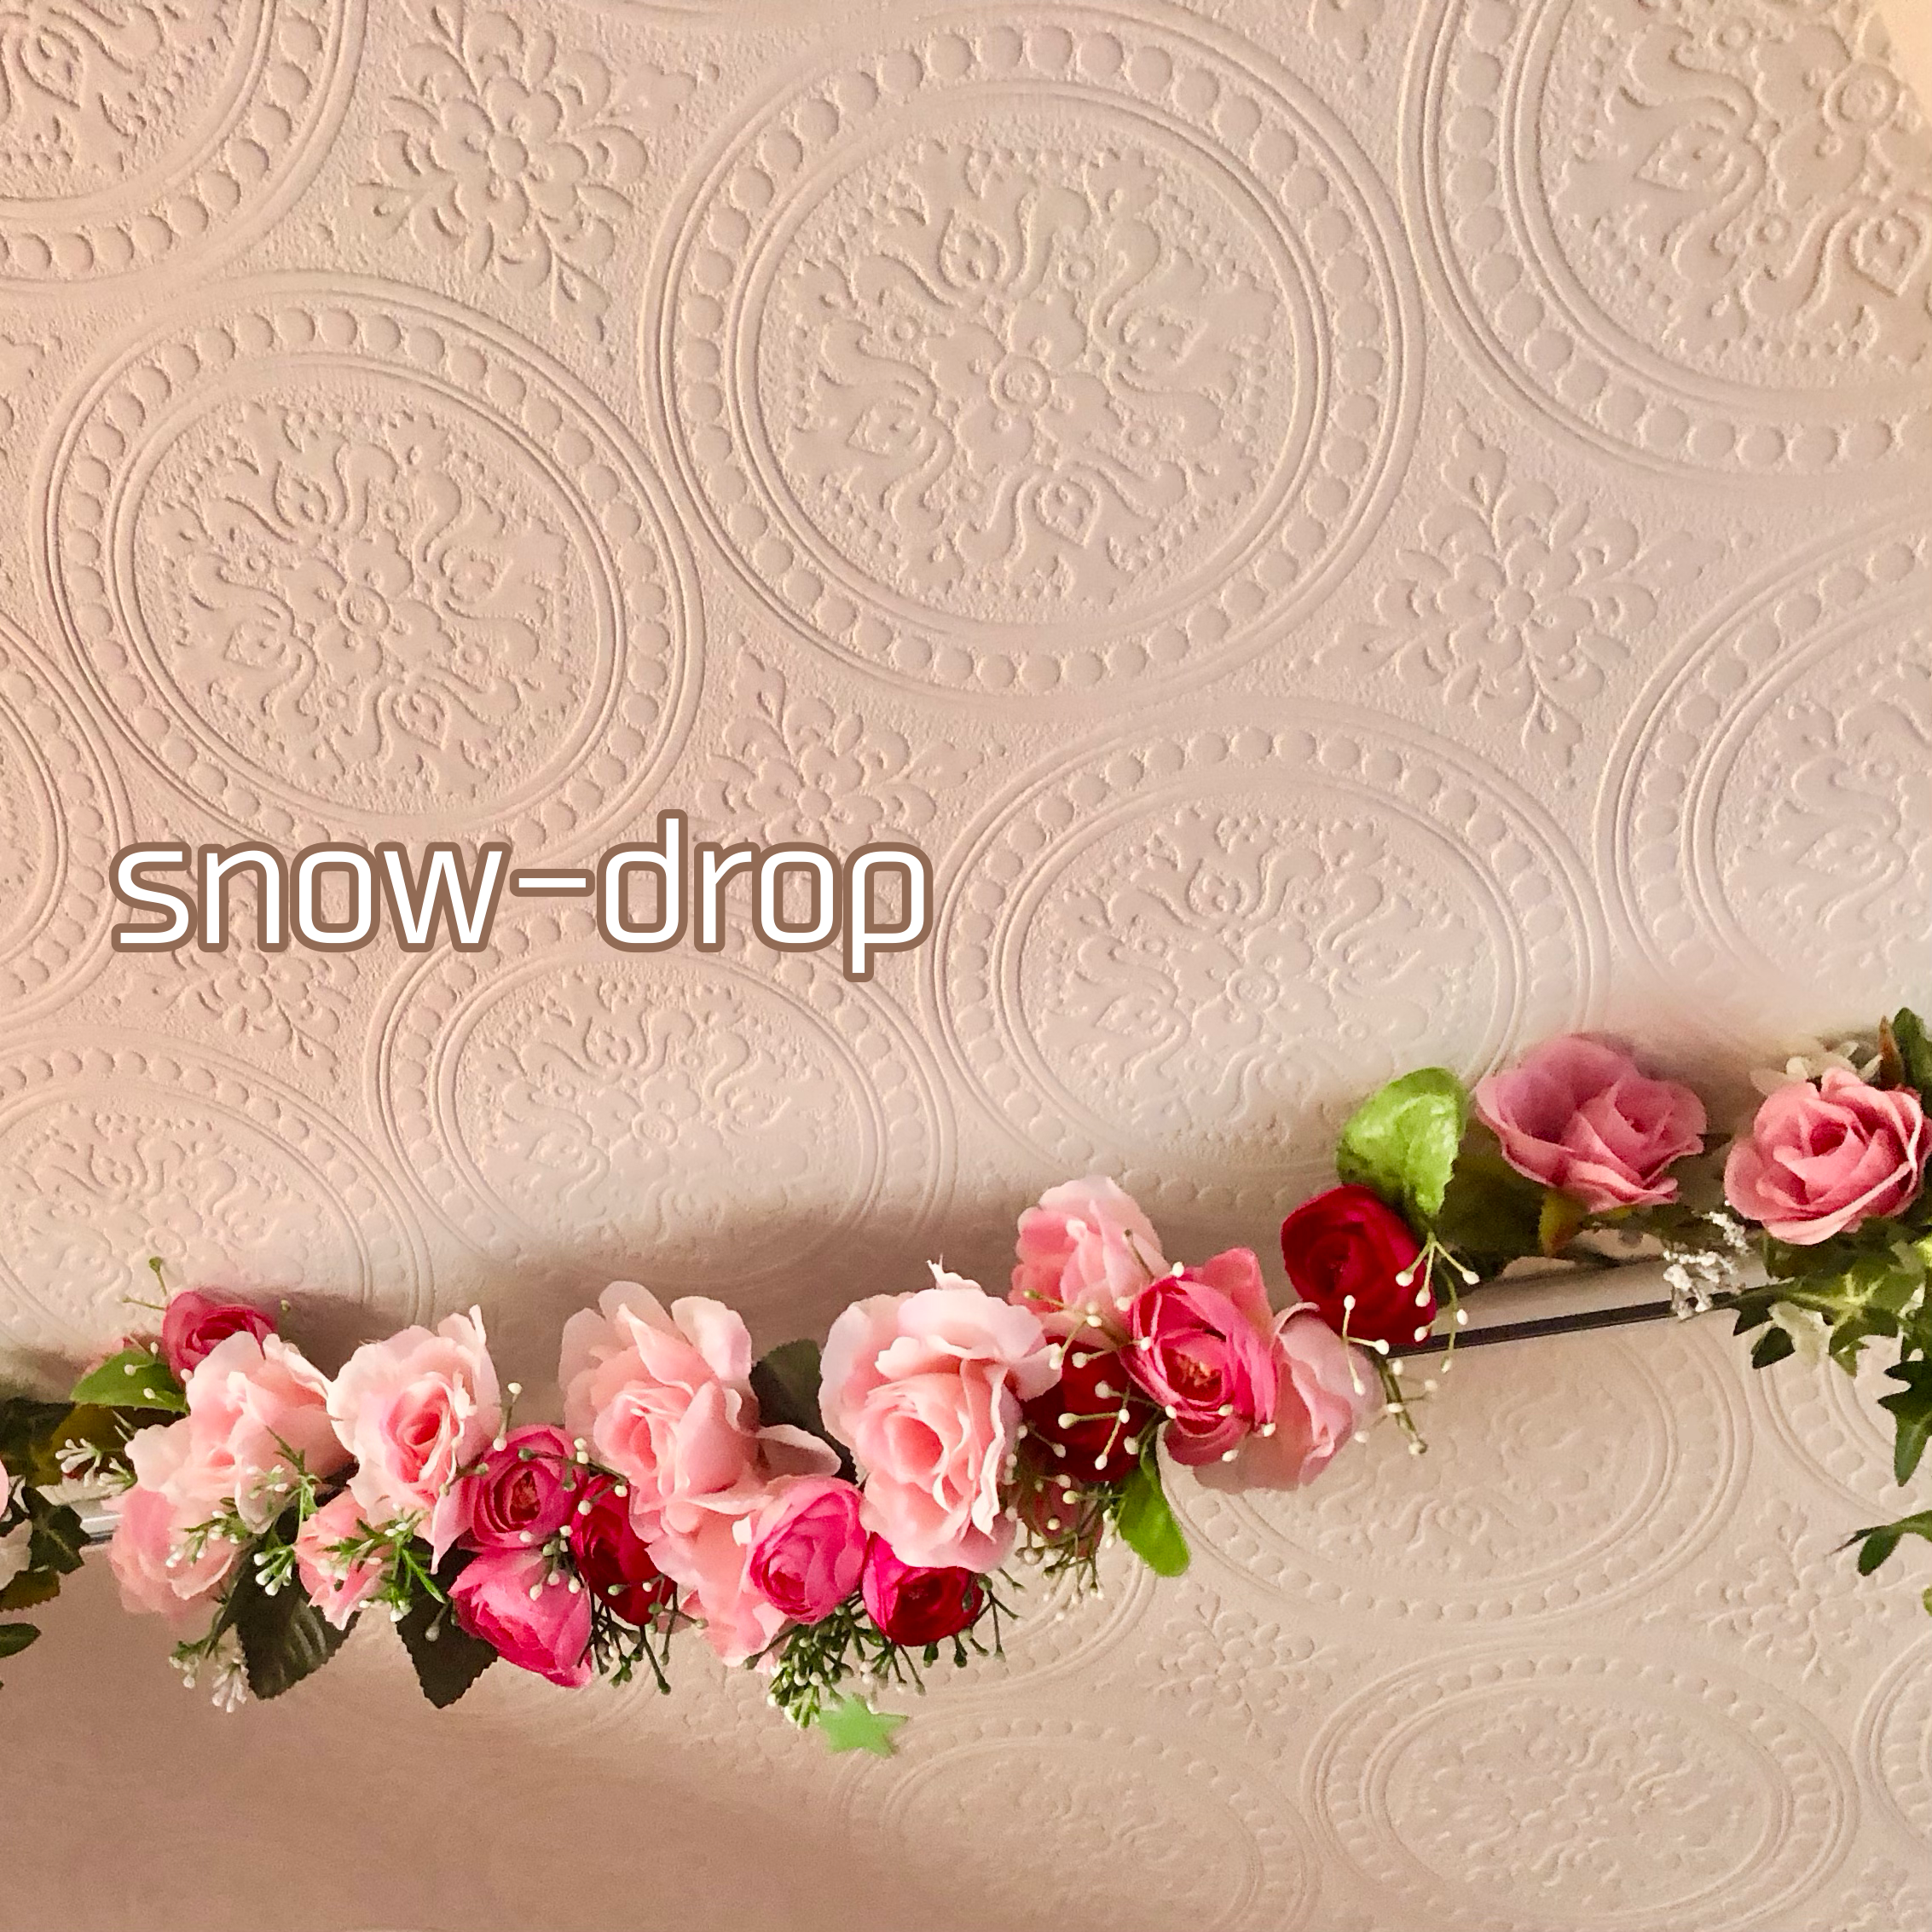 snow-drop